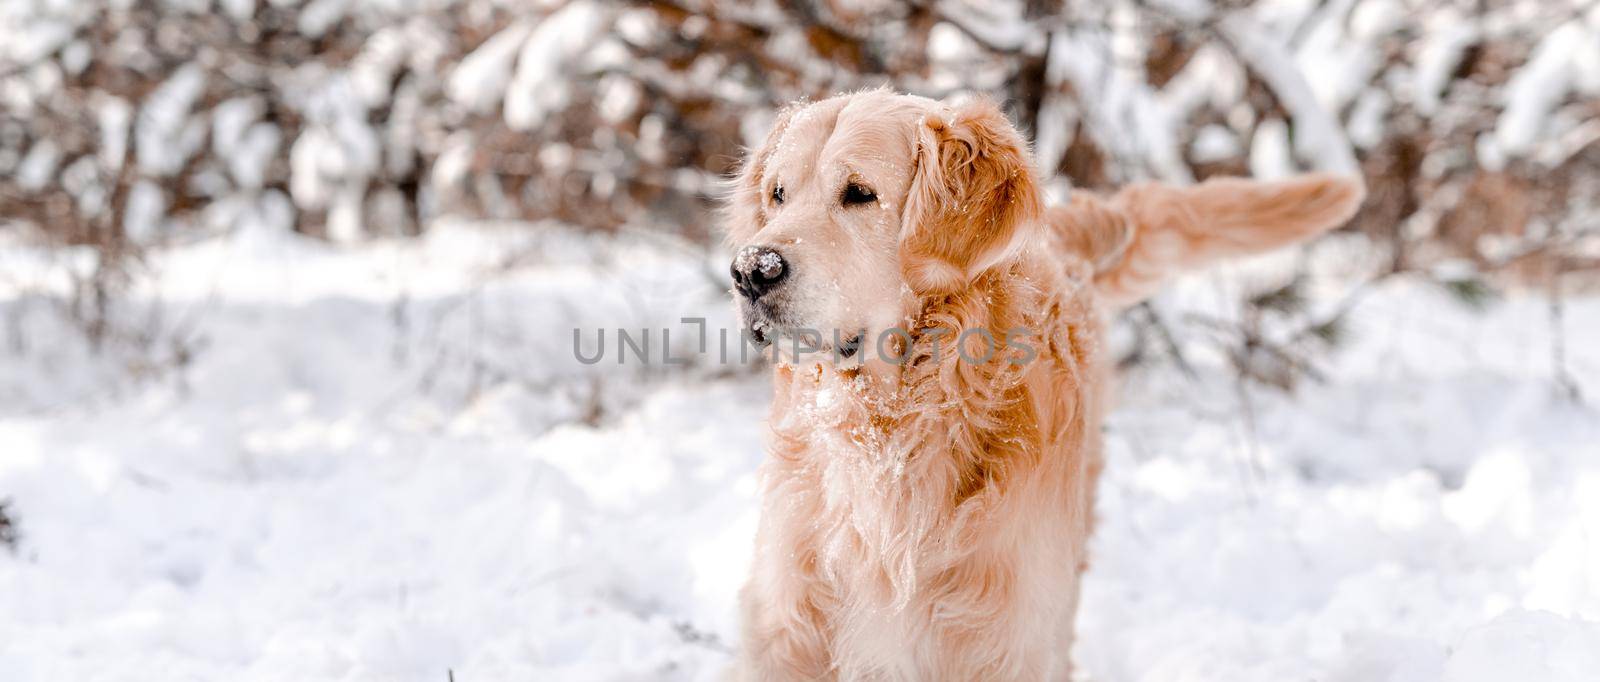 Golden retriever dog in winter time by tan4ikk1